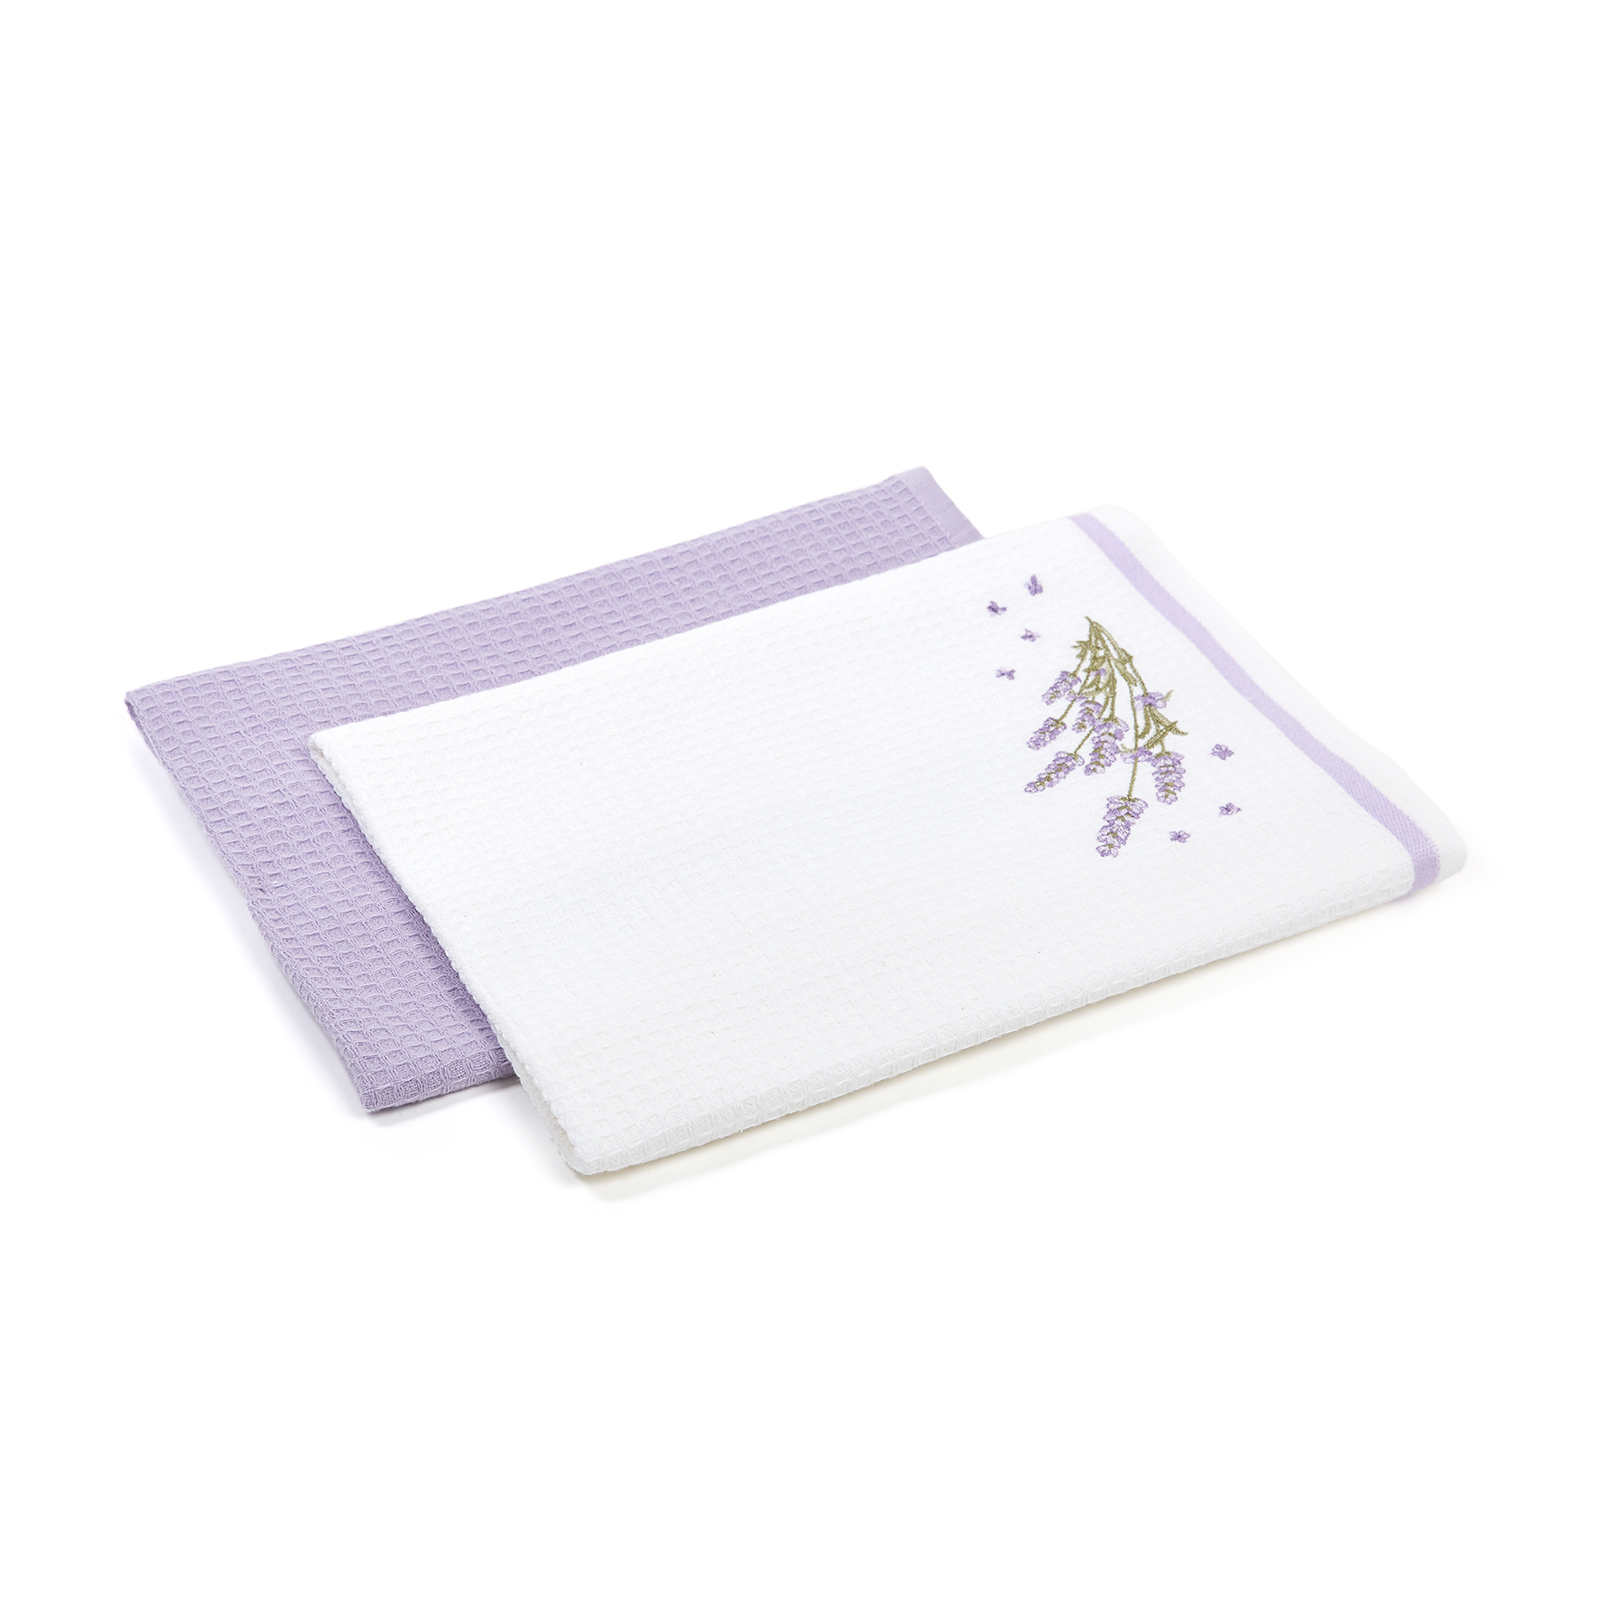 Комплект вафельных полотенец Lavender